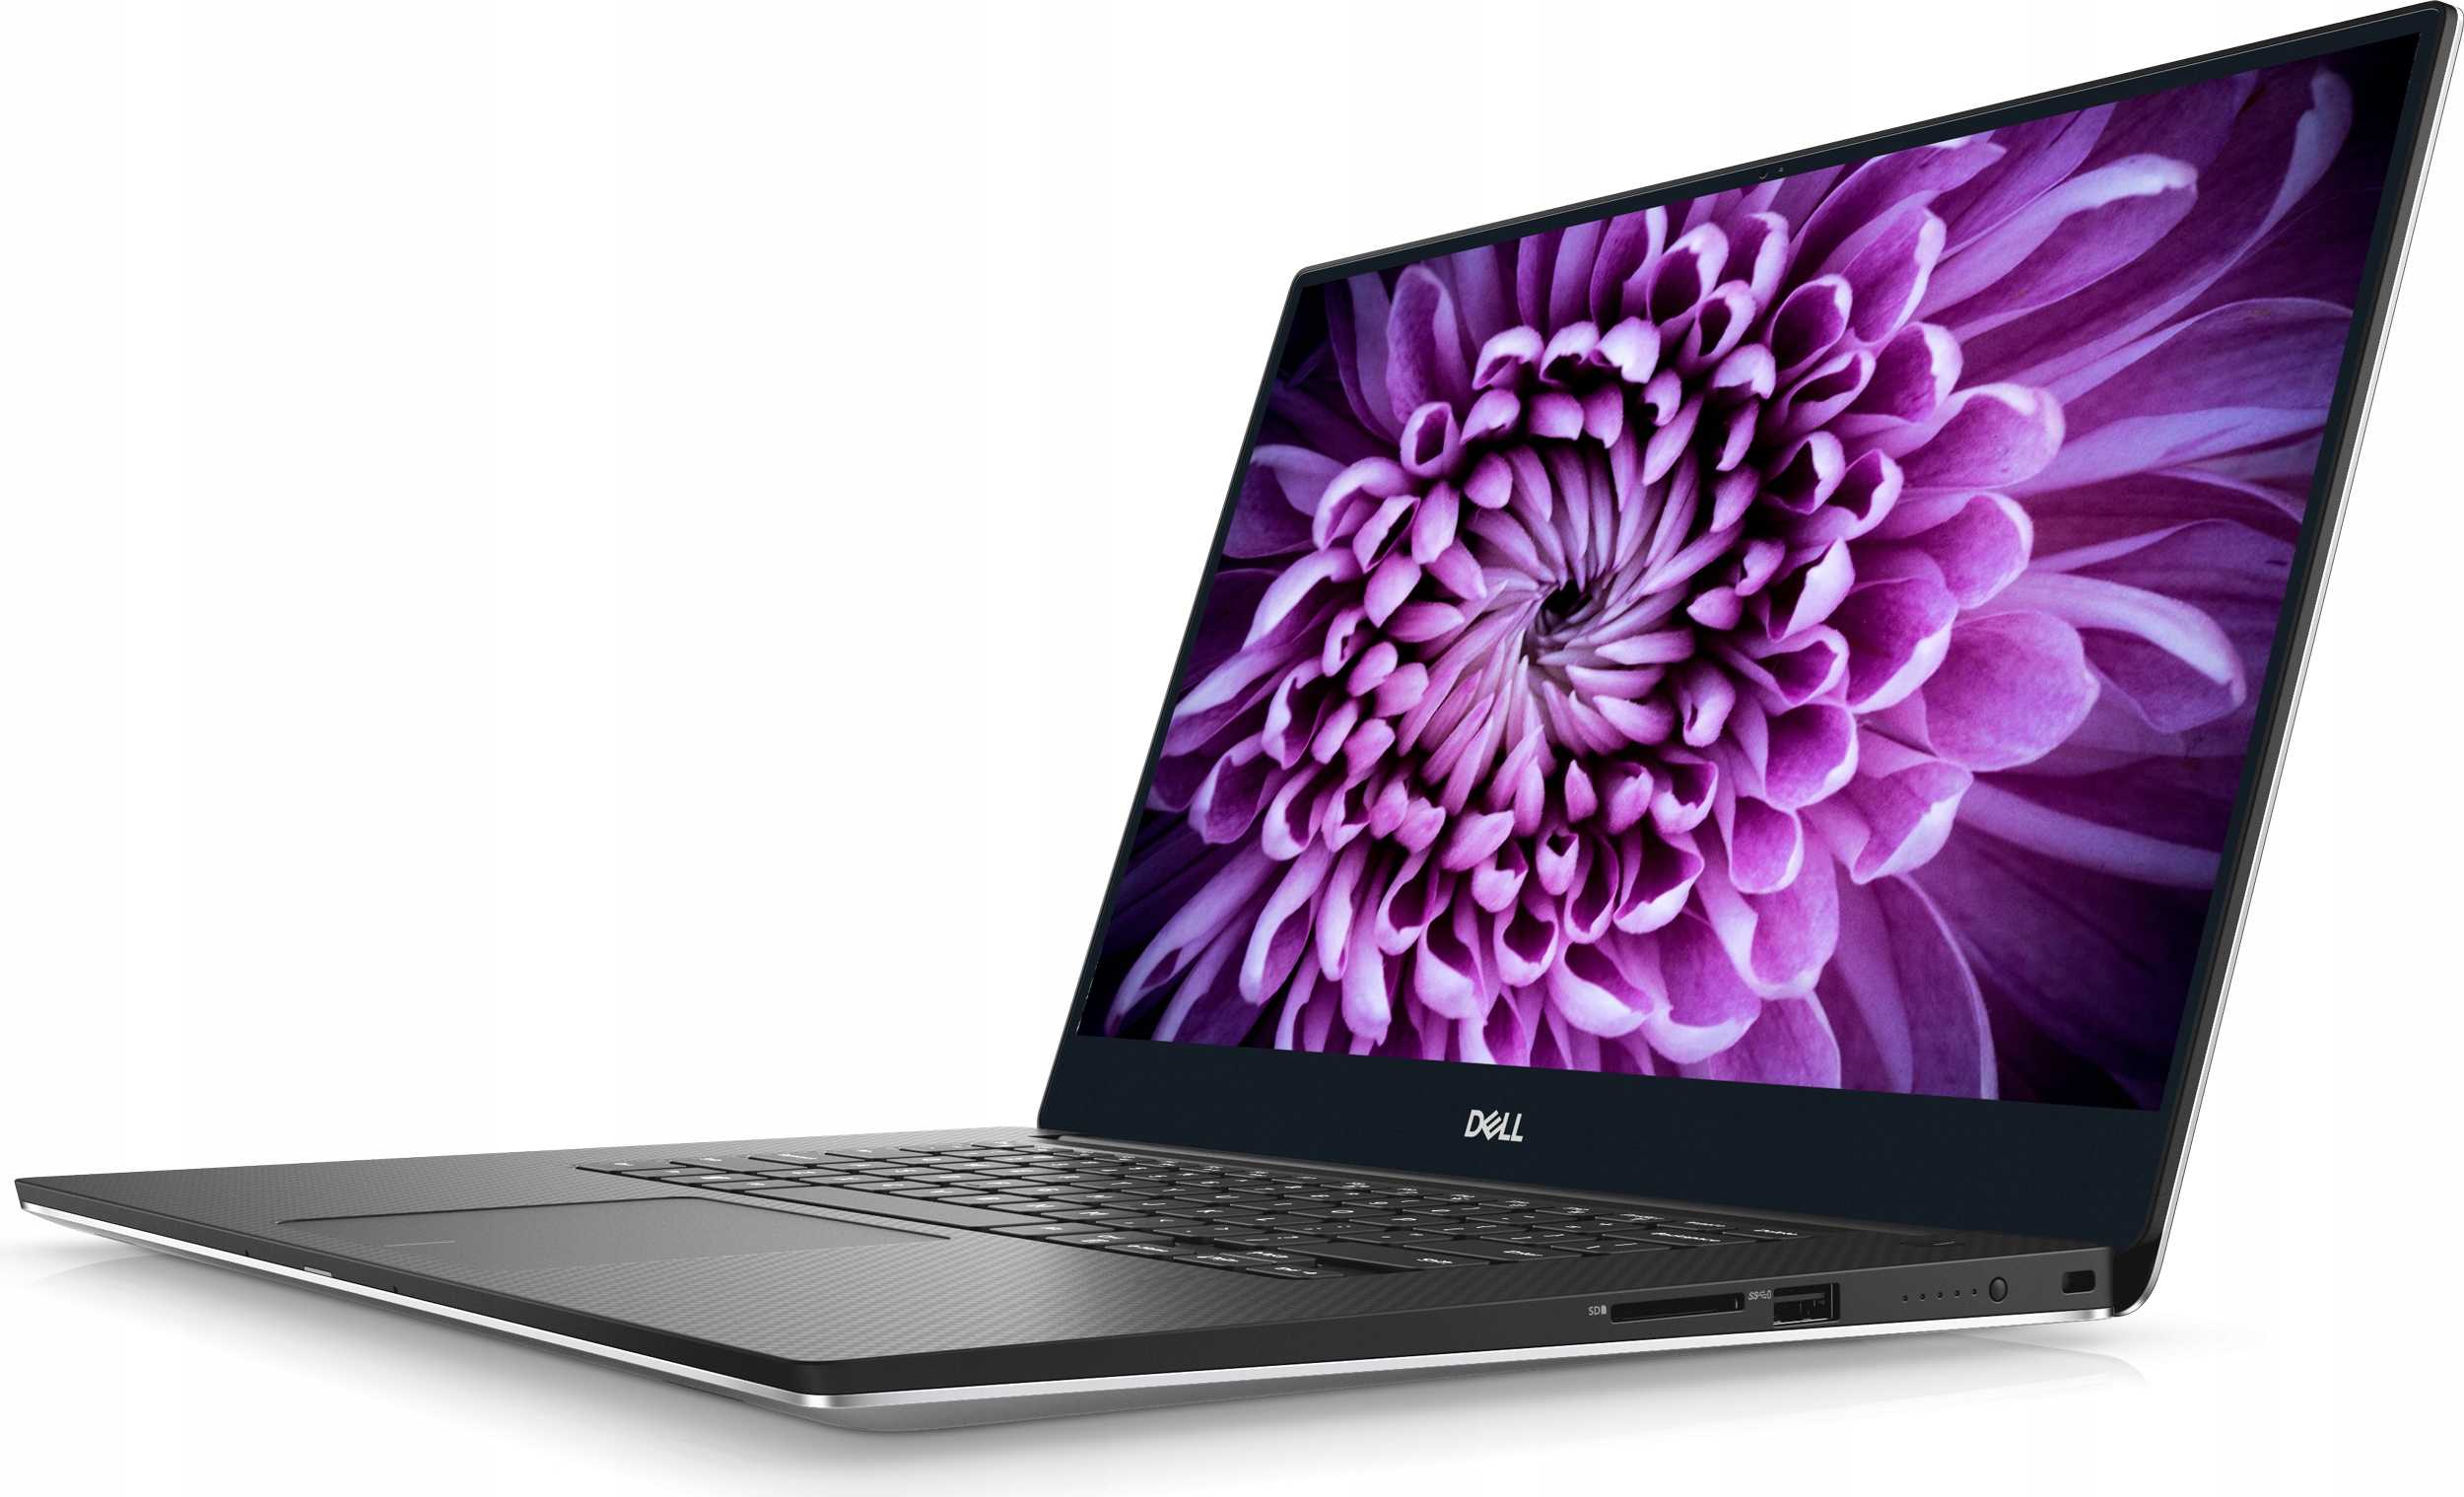 Dell xps 10 tablet 32gb - купить , скидки, цена, отзывы, обзор, характеристики - планшеты